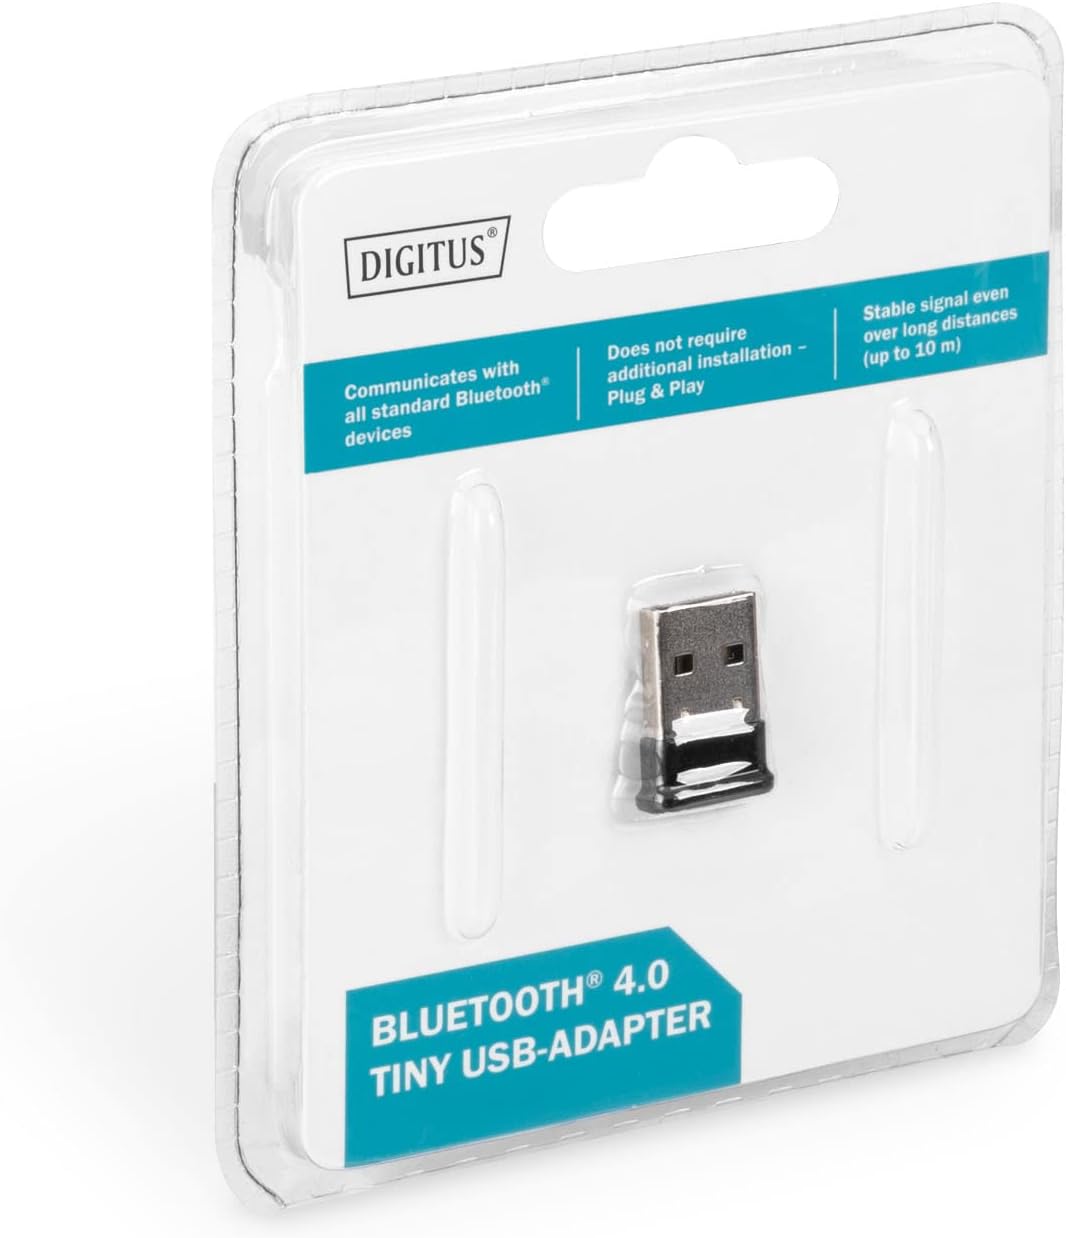 Adattatore Digitus bluetoot 4.0 USB 2.0 10MT